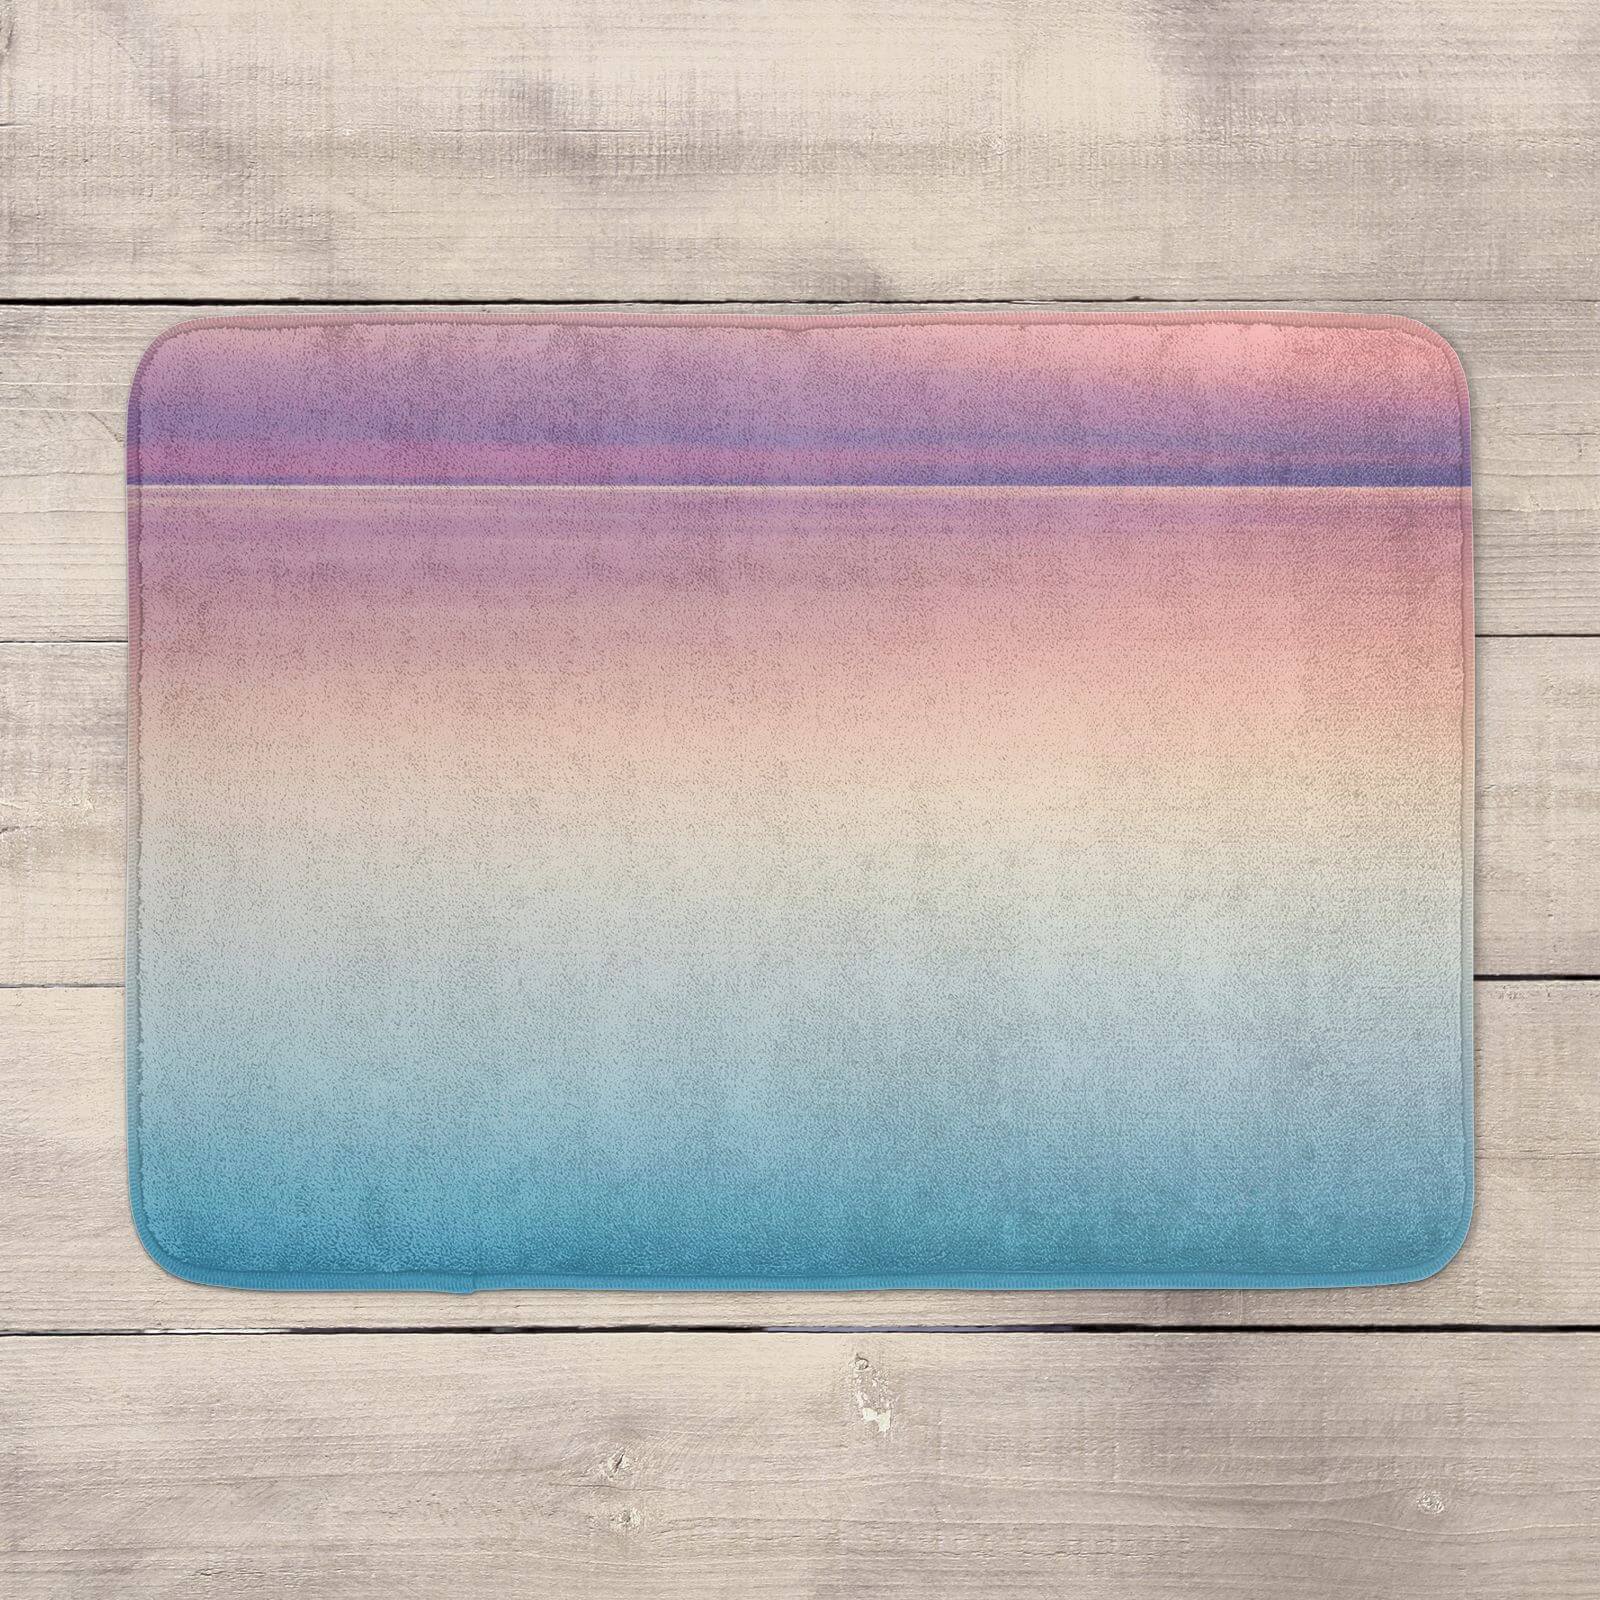 Sunset Blue And Pink Bath Mat